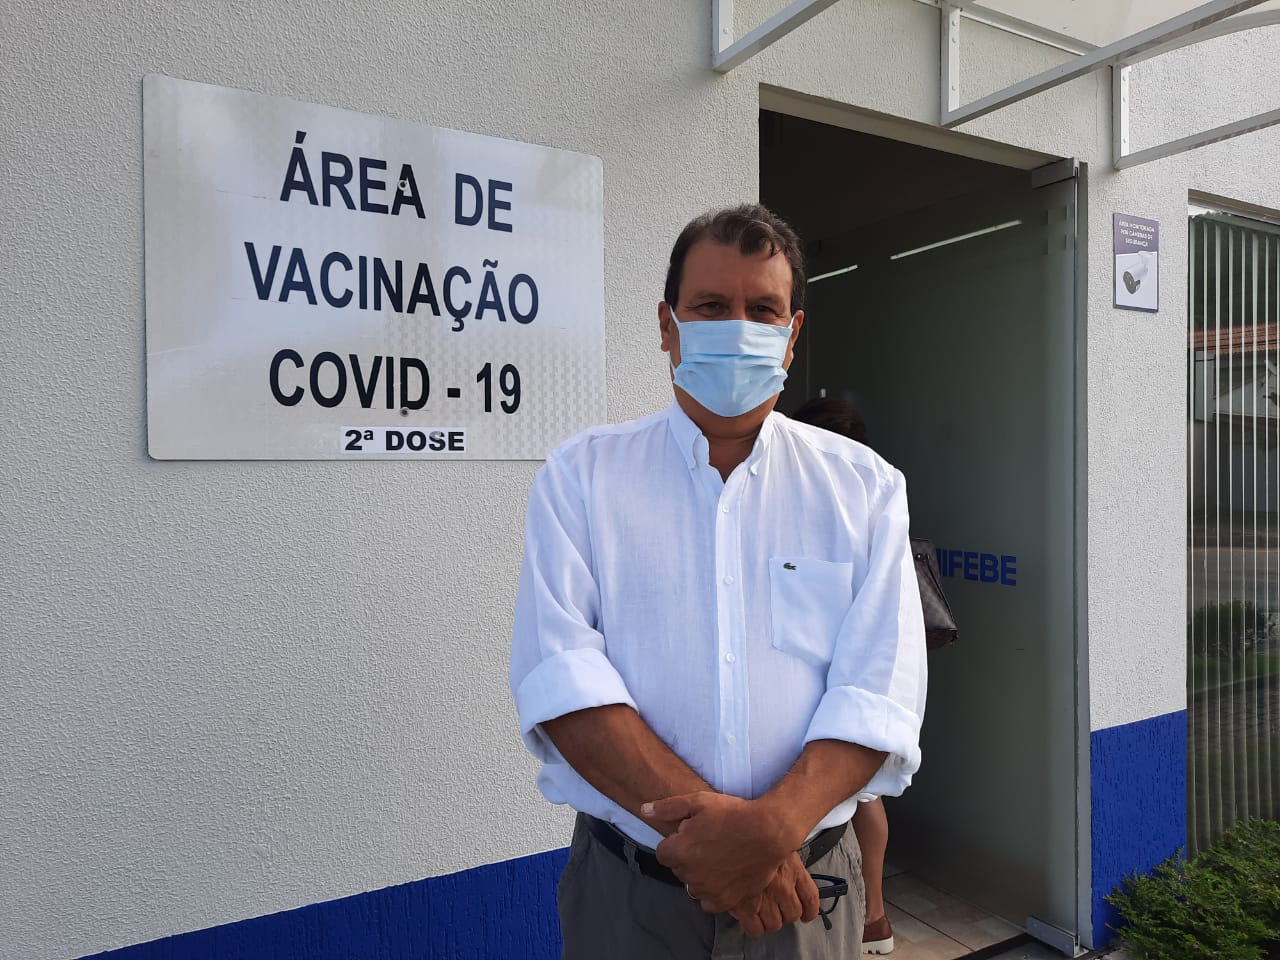 Covid-19: Centro de vacinação já está em funcionamento na Unifebe